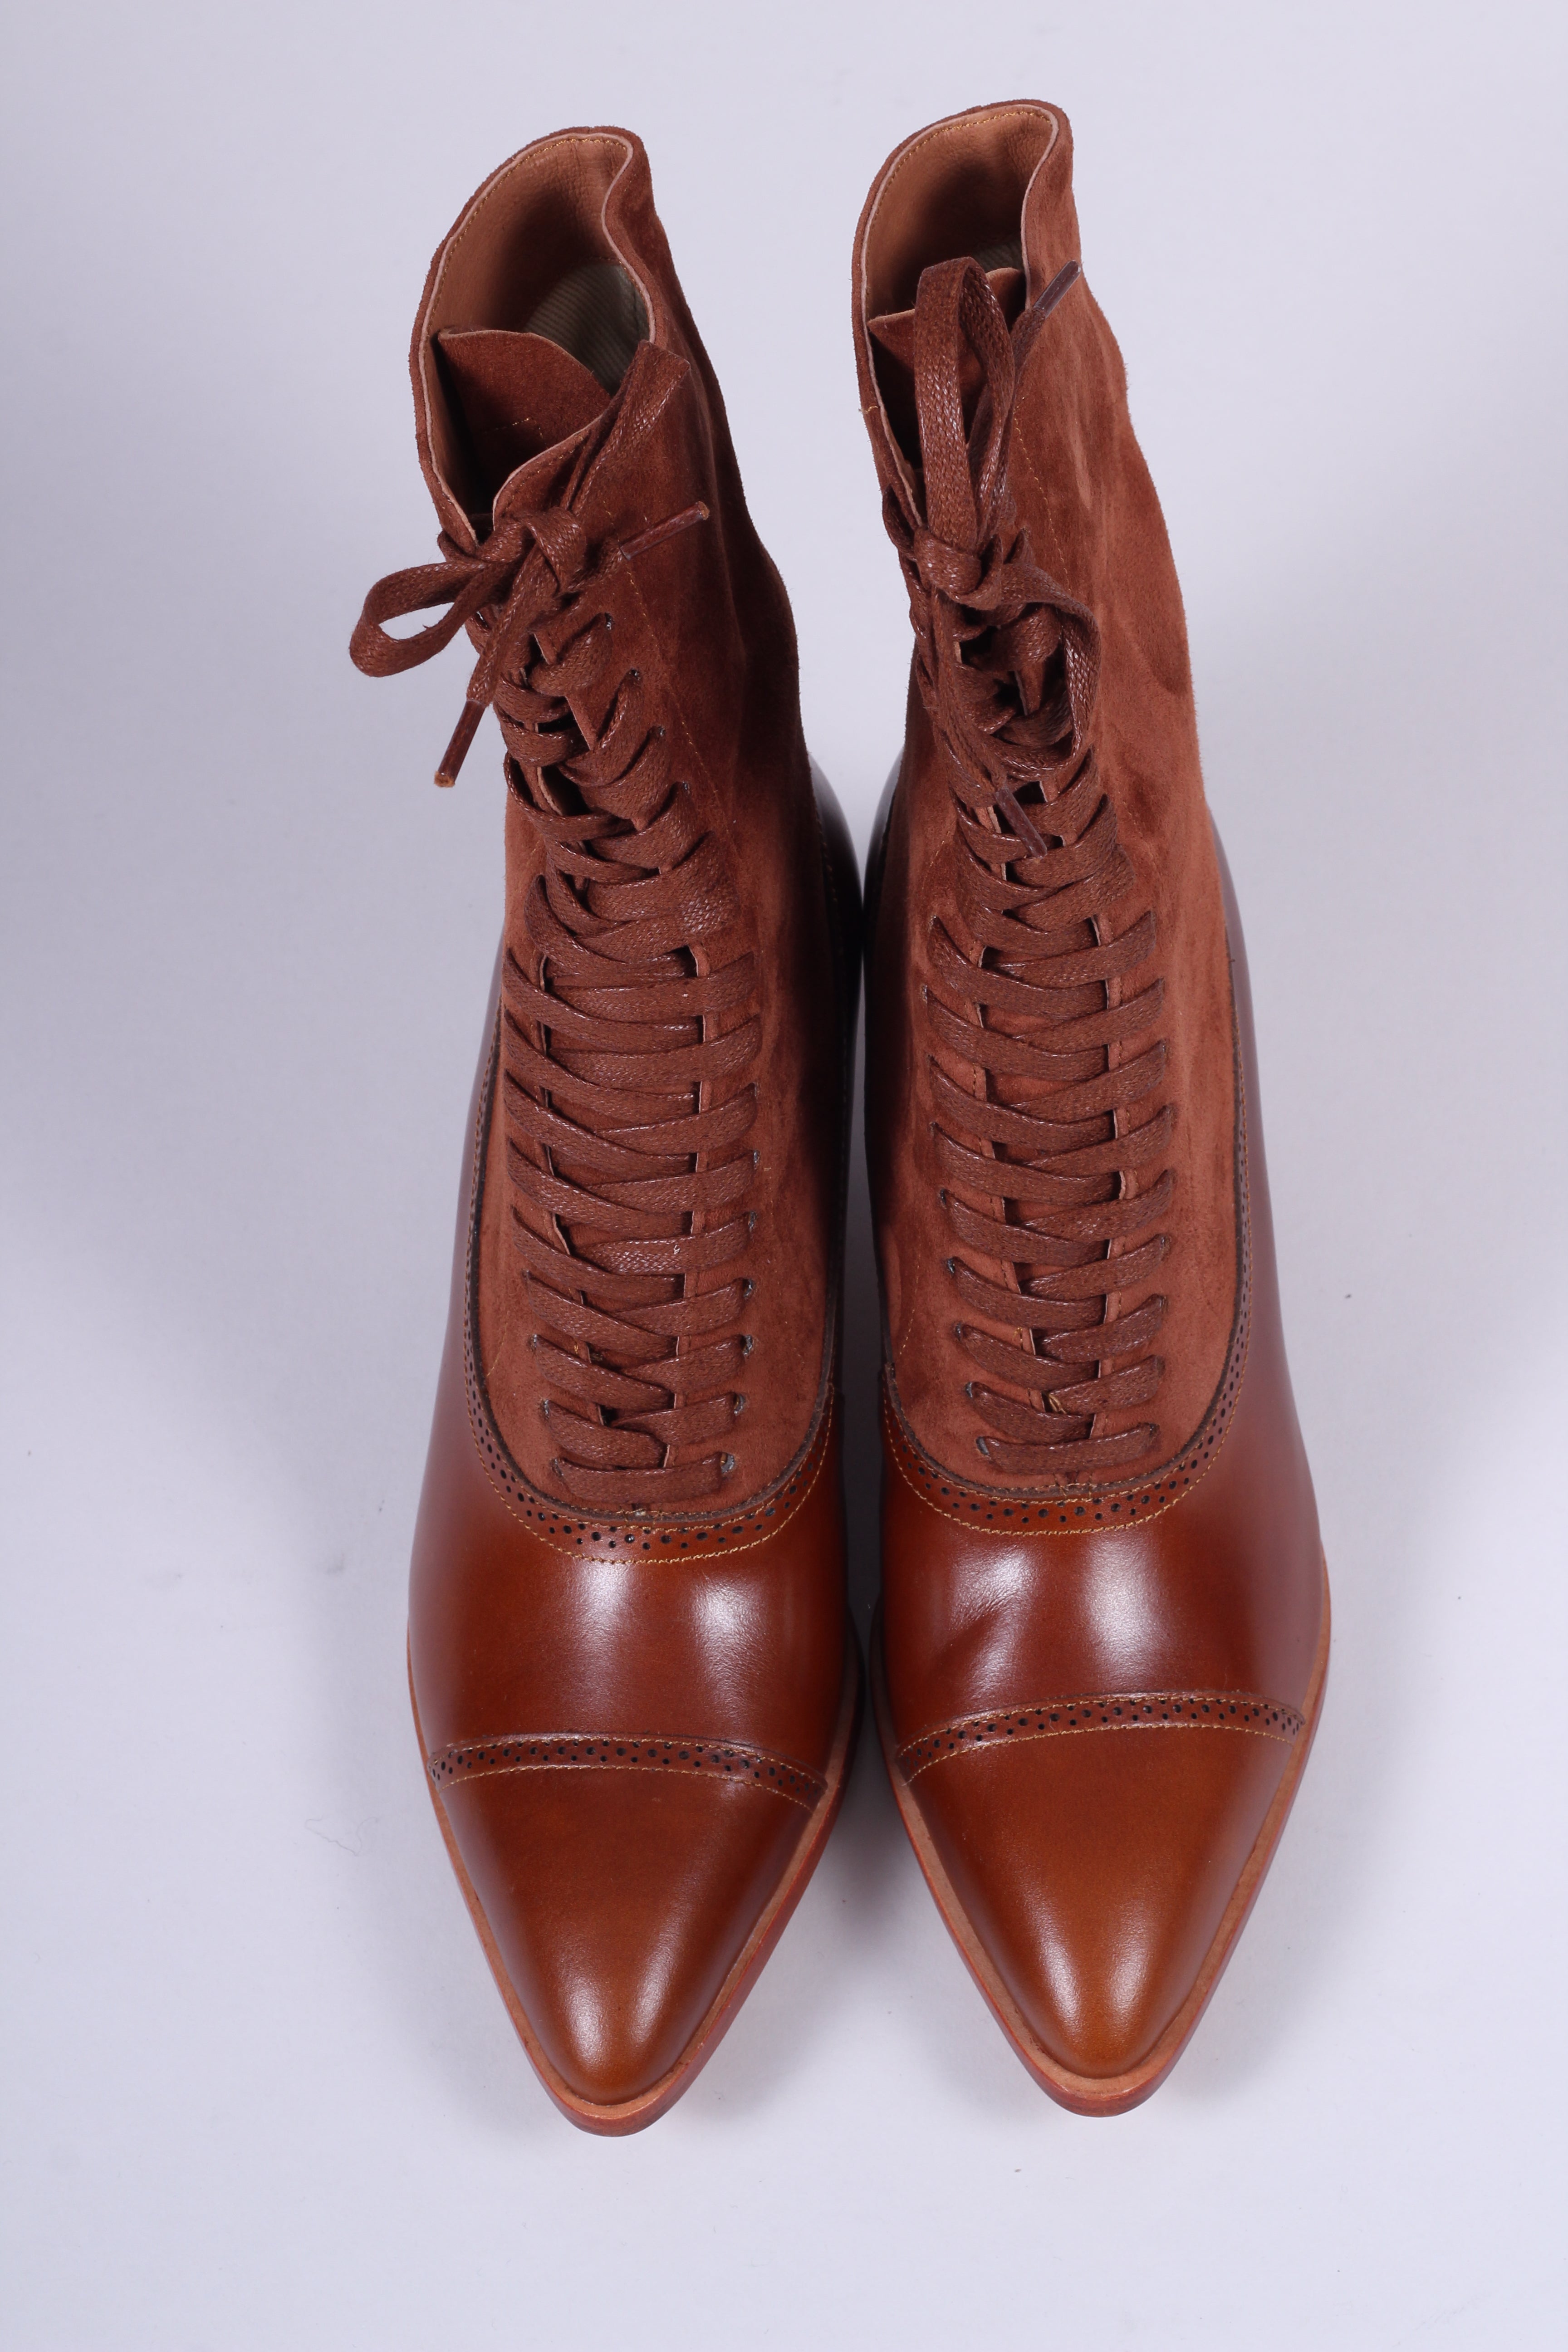 Edwardianske støvler 1900-1910 - cognac brun - Victoria